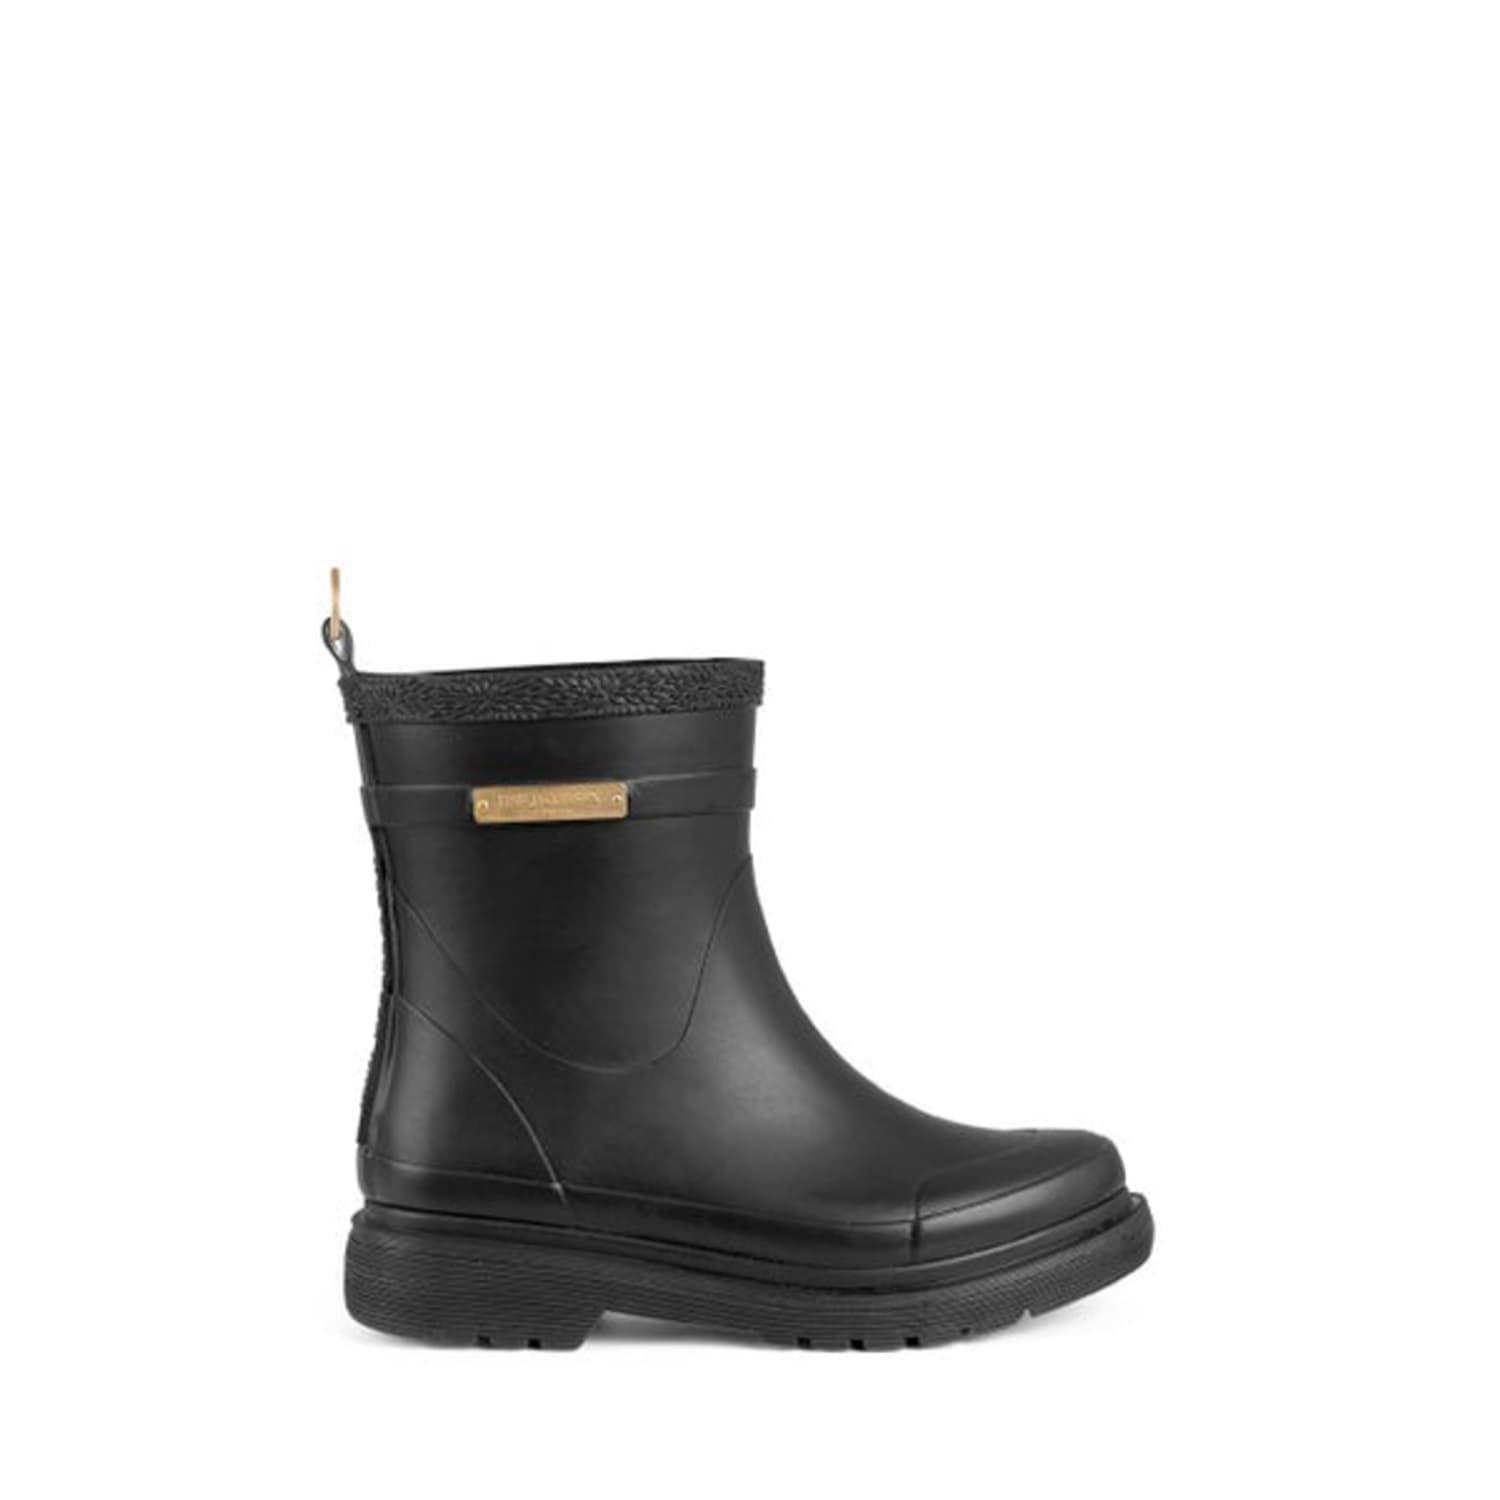 Ilse Jacobsen Style 320 Black Short Rubber Boots | Lyst